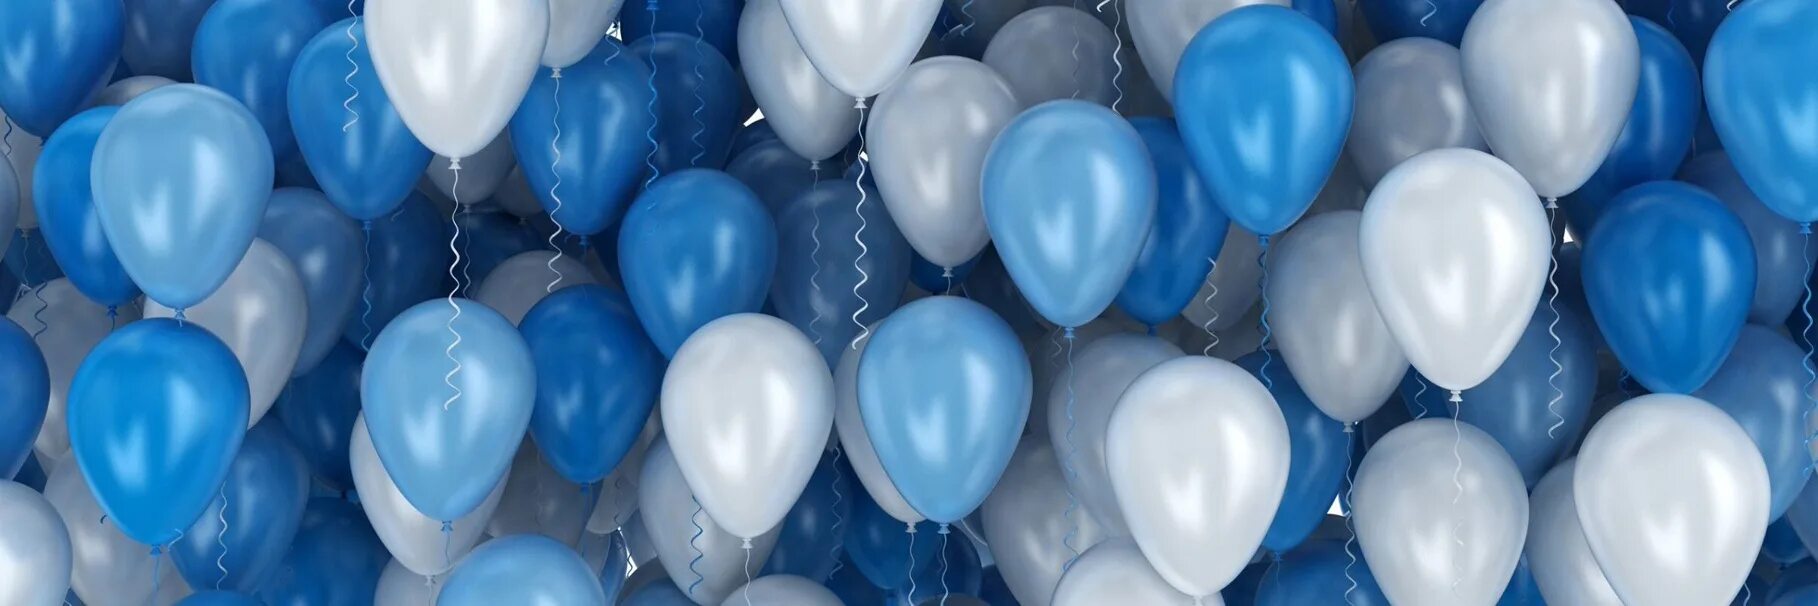 Игра с синими шарами. Воздушный шарик. Синие шары. Синие шары воздушные. Голубой шарик.